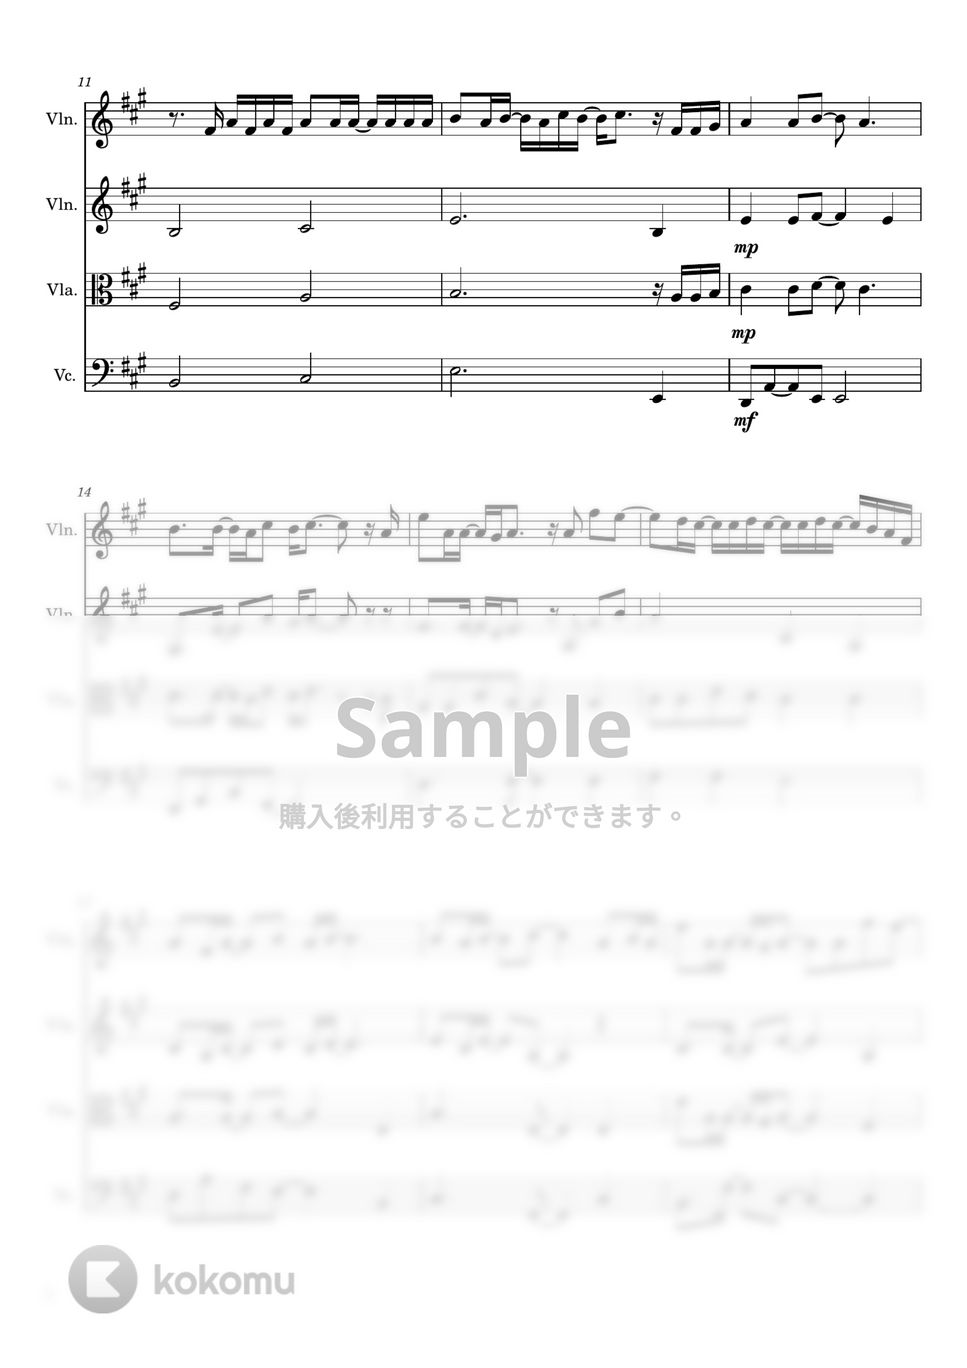 優里 - かくれんぼ (弦楽四重奏) by Cellotto